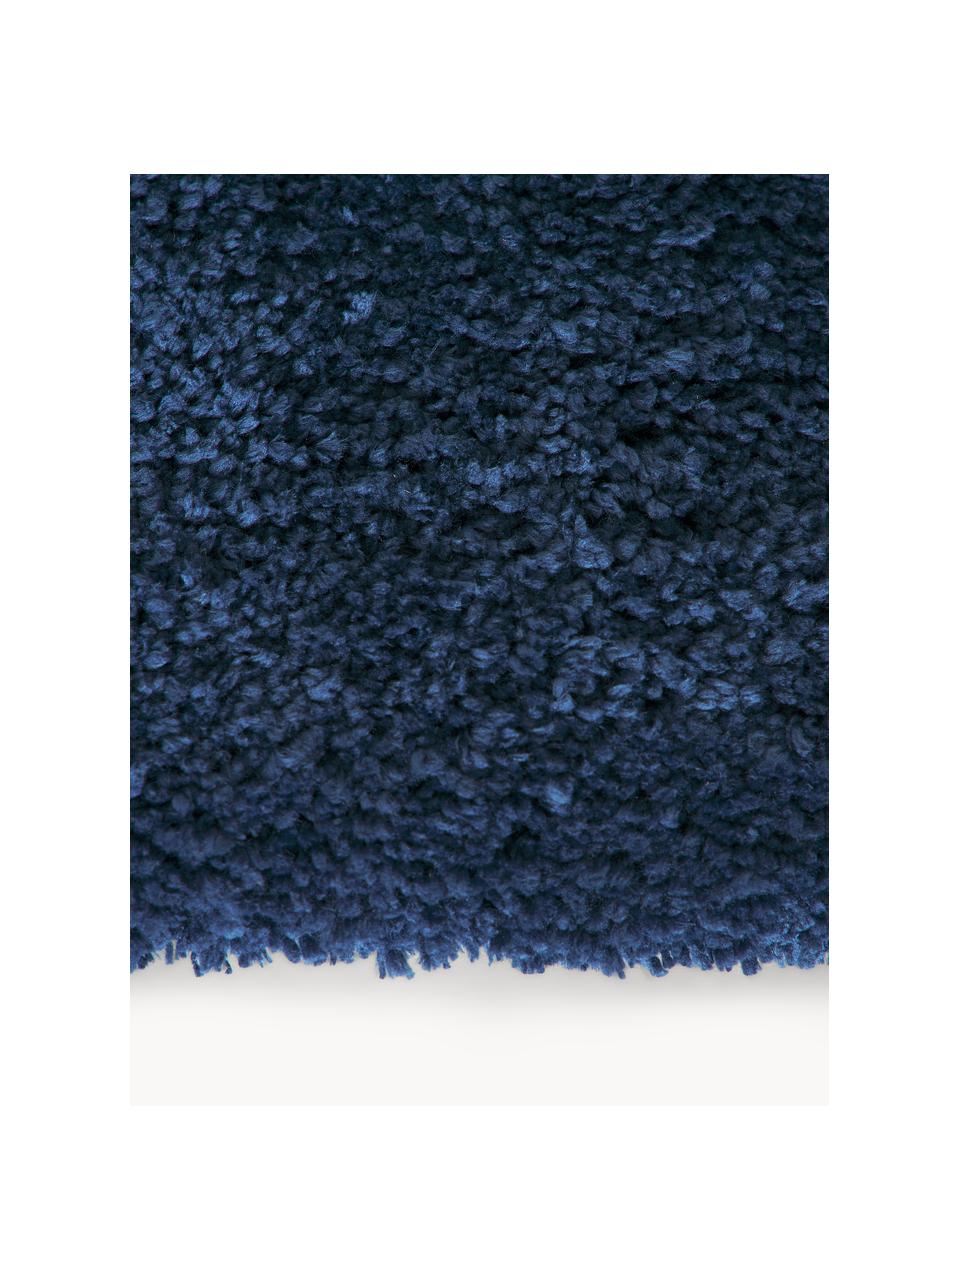 Puszysty chodnik z długim włosiem Leighton, Ciemny niebieski, S 80 x D 200 cm